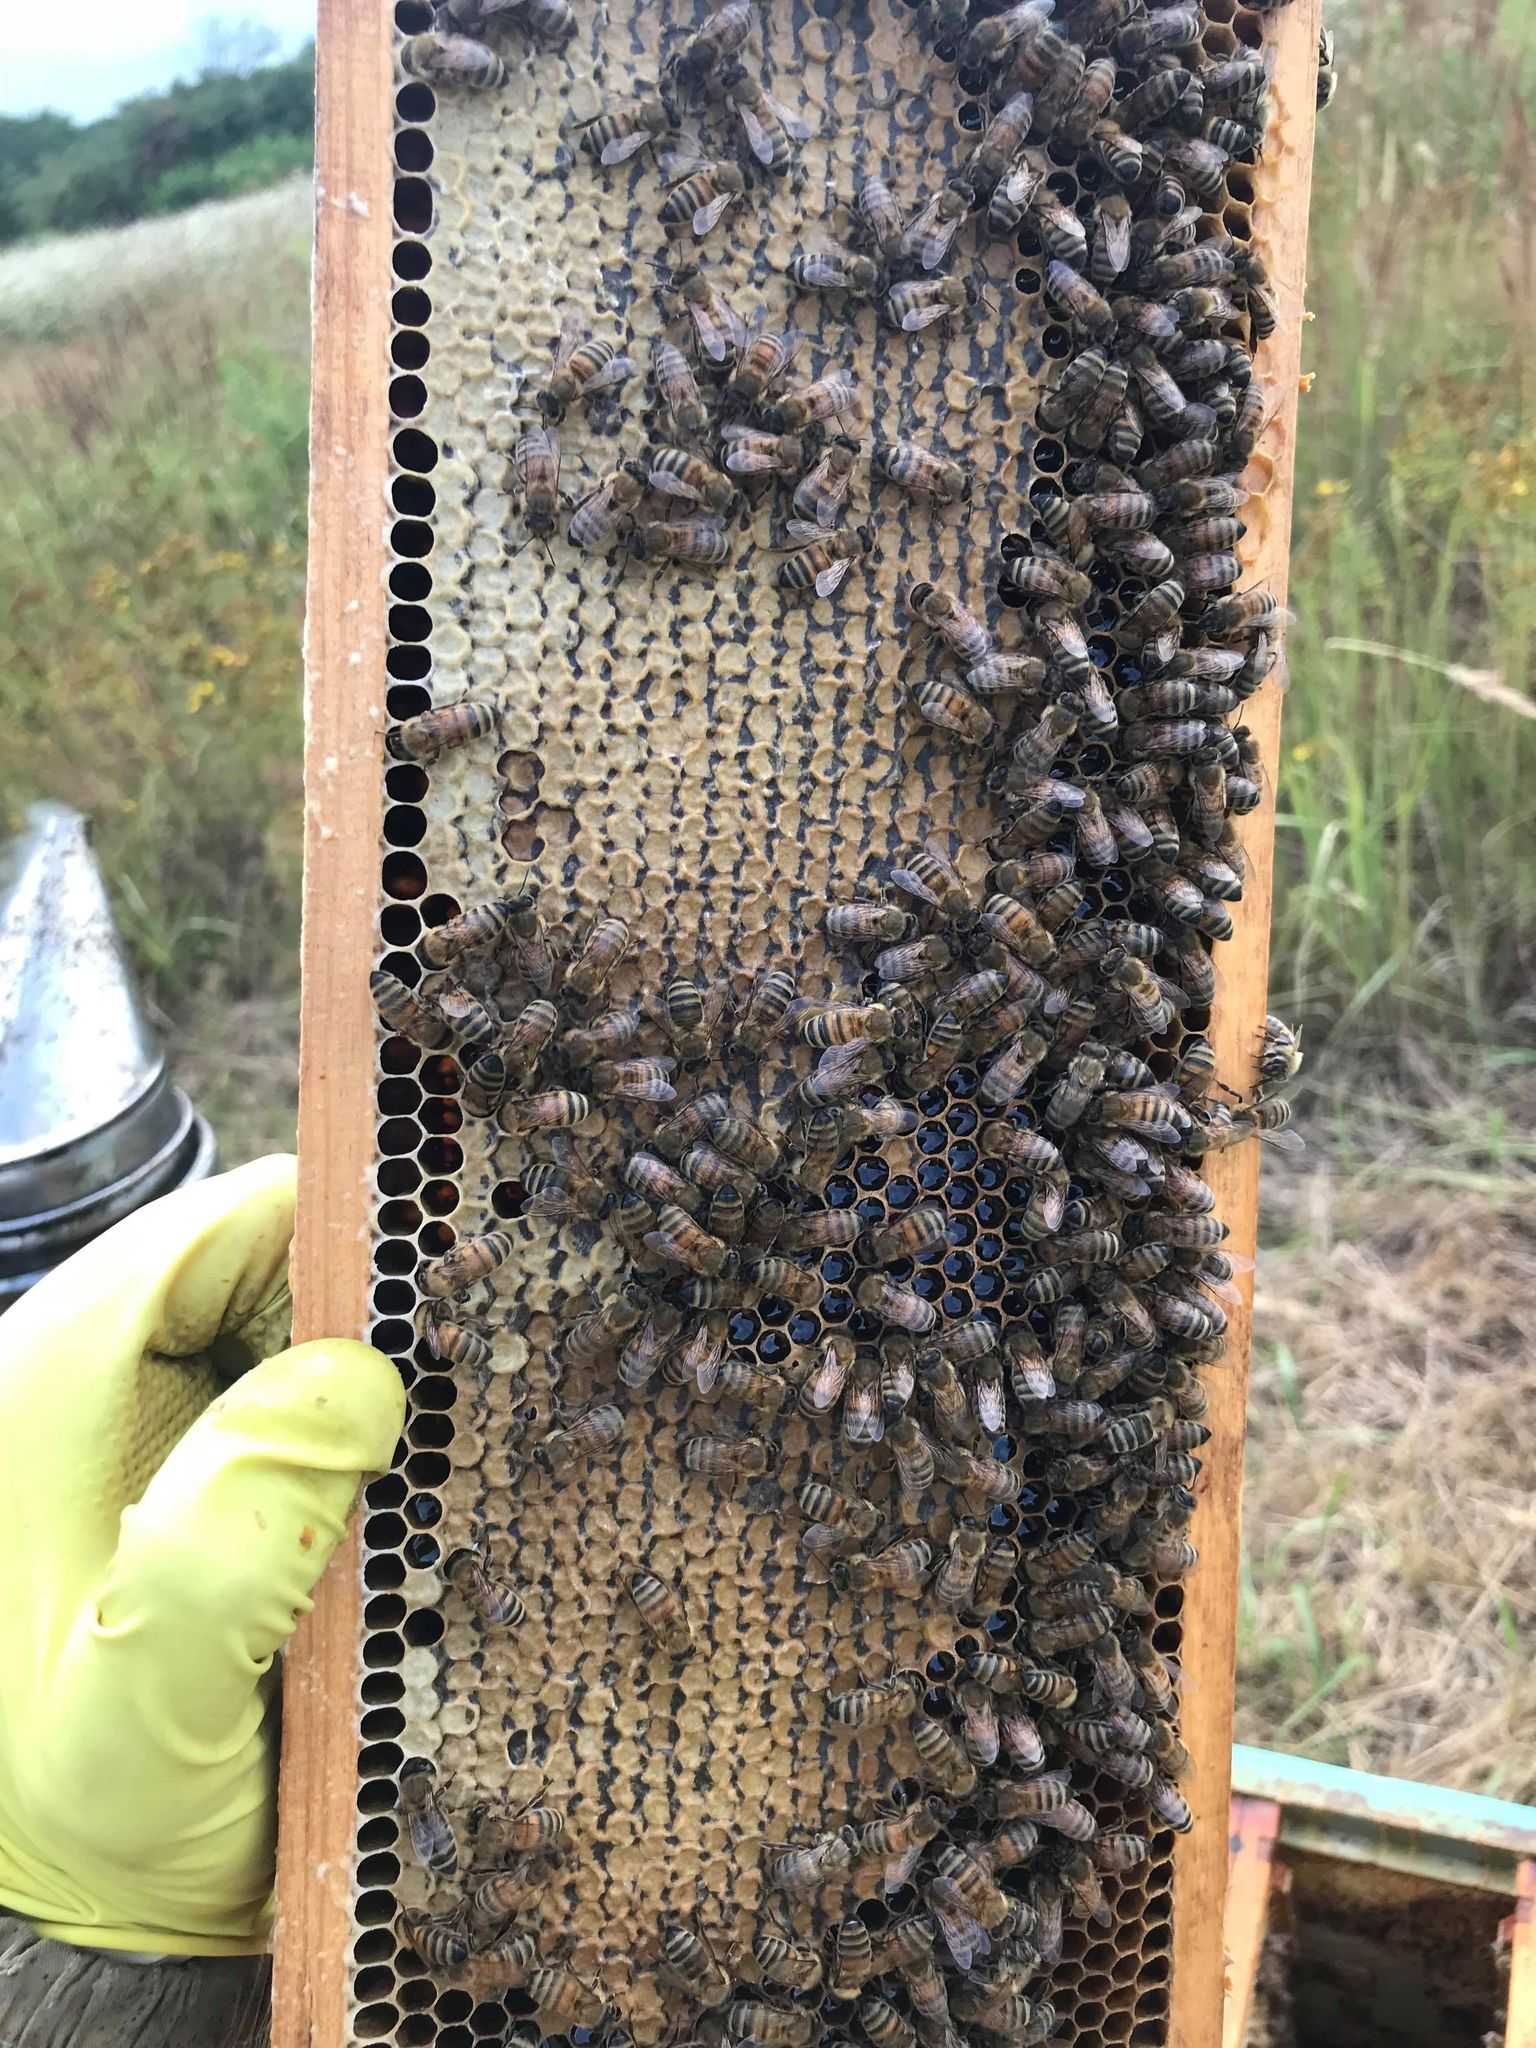 Miód pszczeli,pasieka,rodziny pszczele